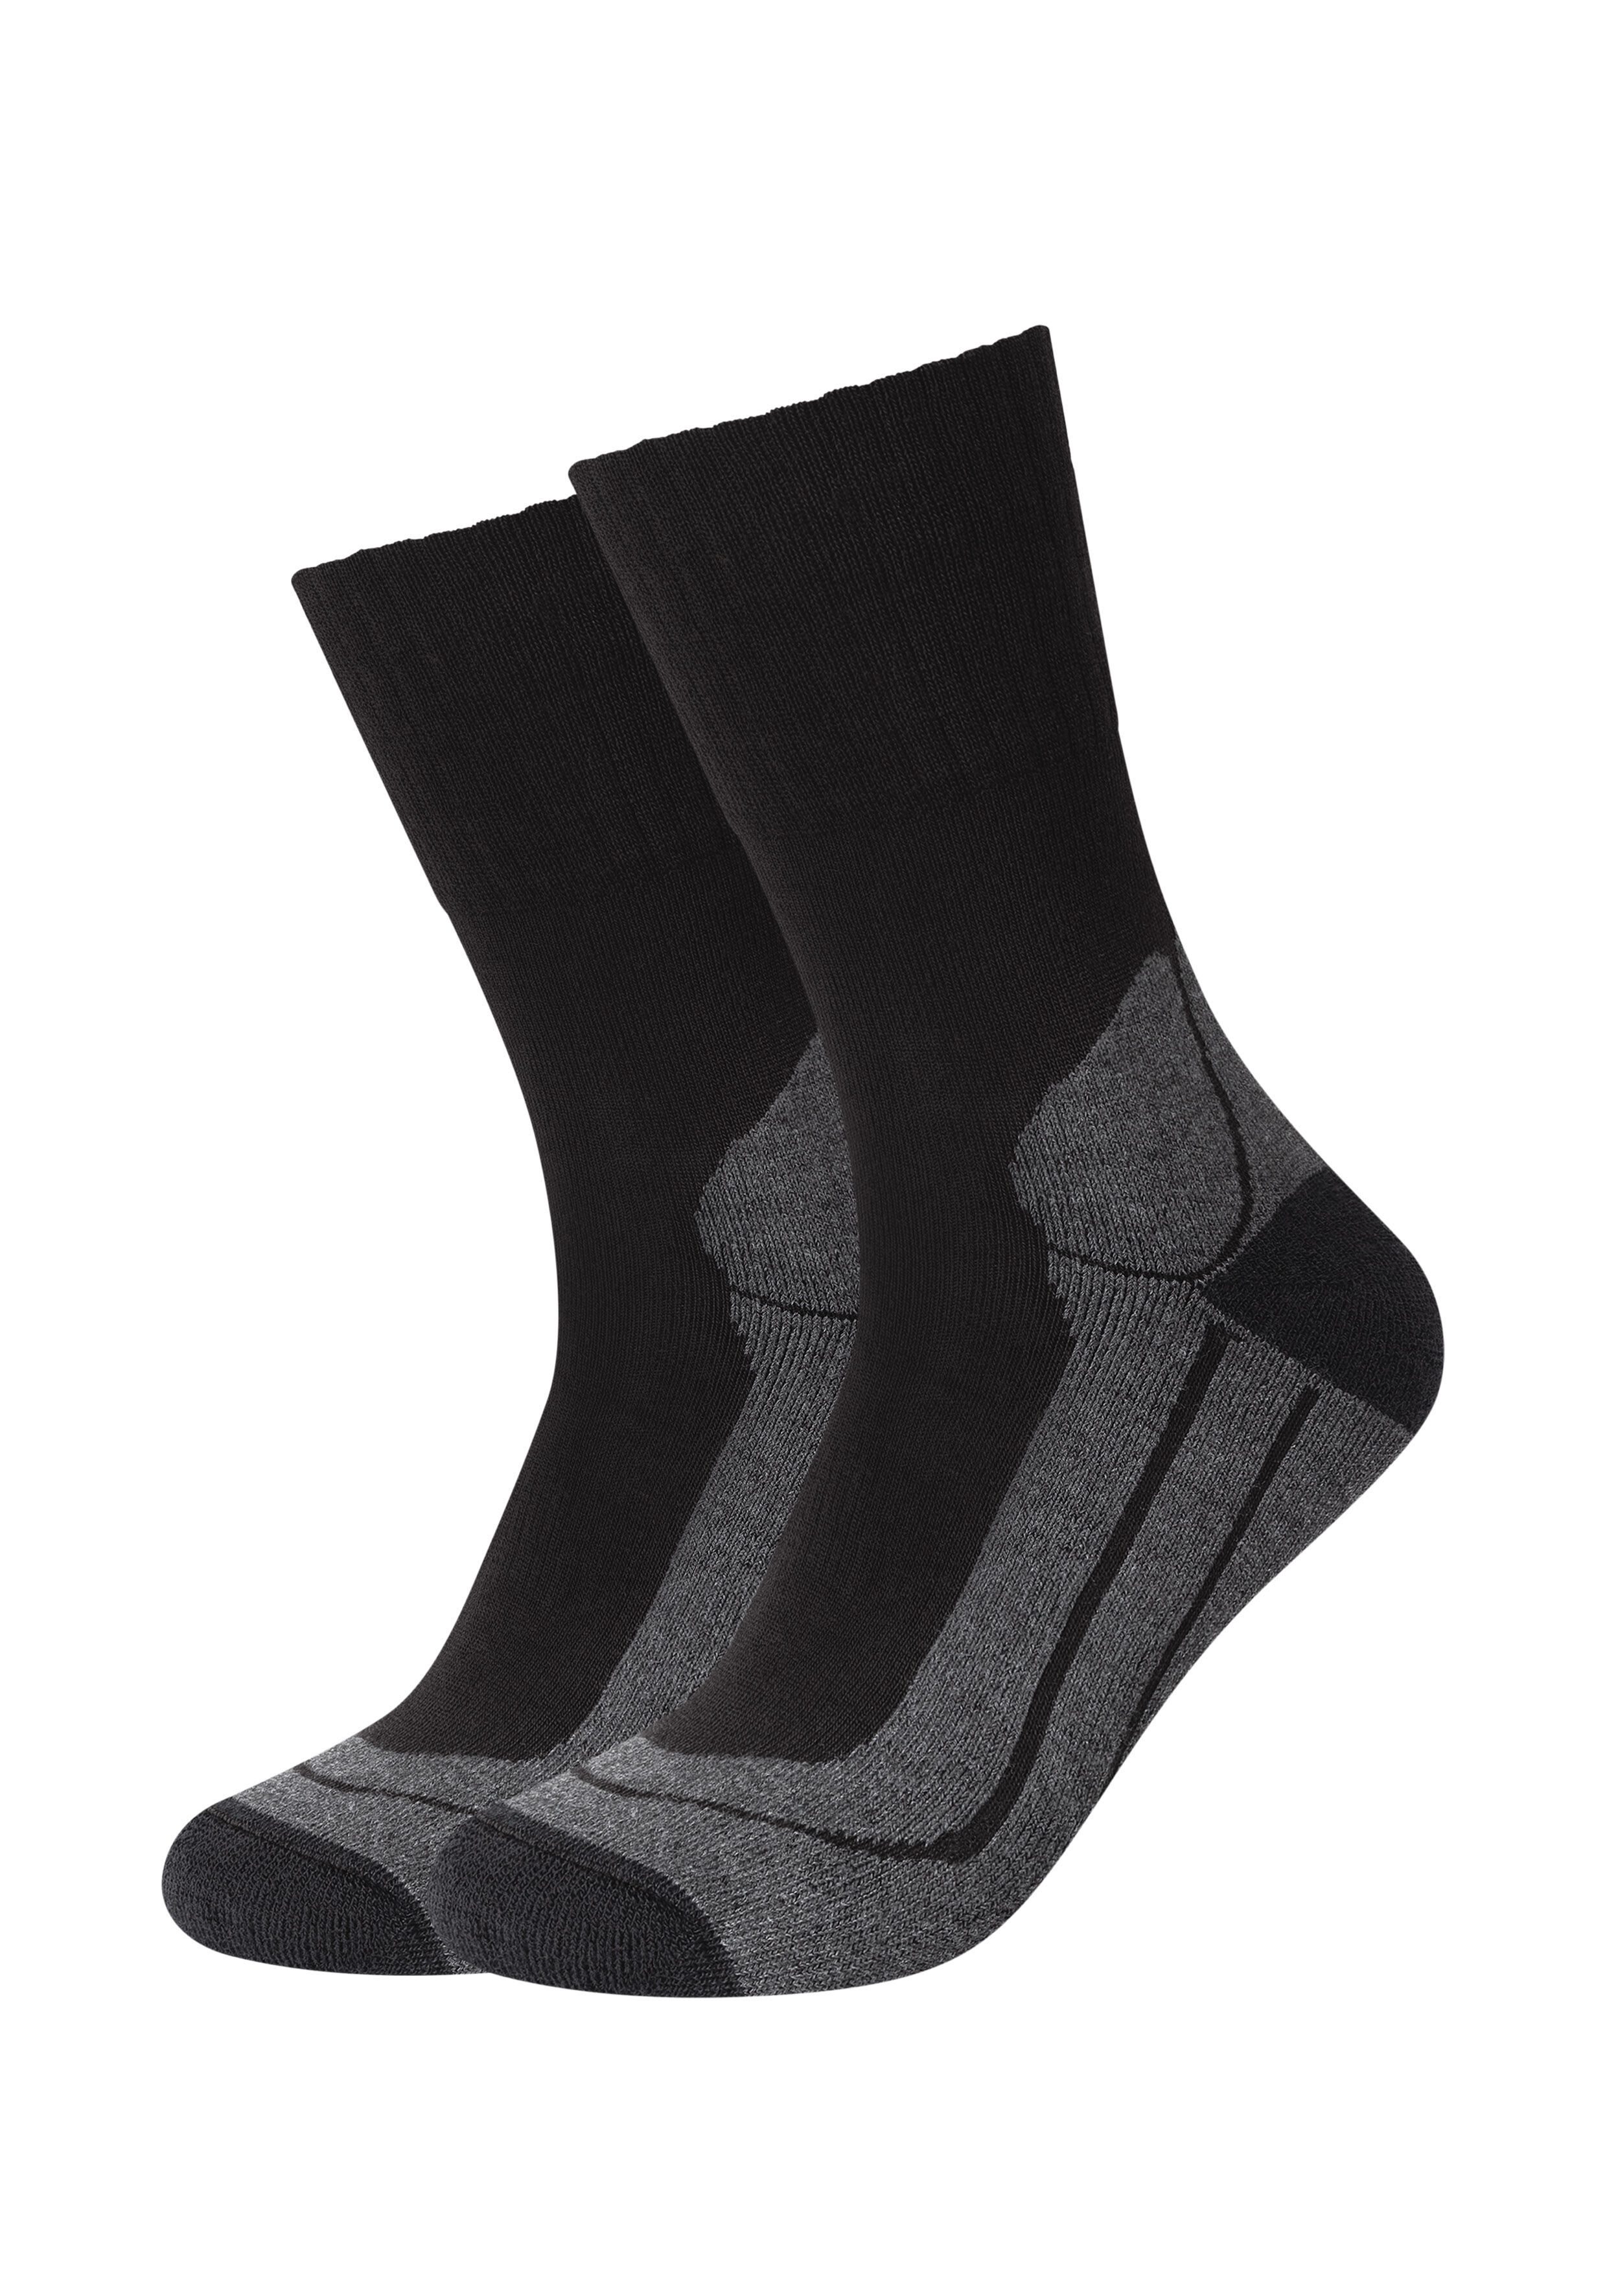 Camano Функціональні шкарпетки (Packung, 2-Paar) Für diverse Outdoor-Aktivitäten wie Wandern,Trekking, Mountainbiken